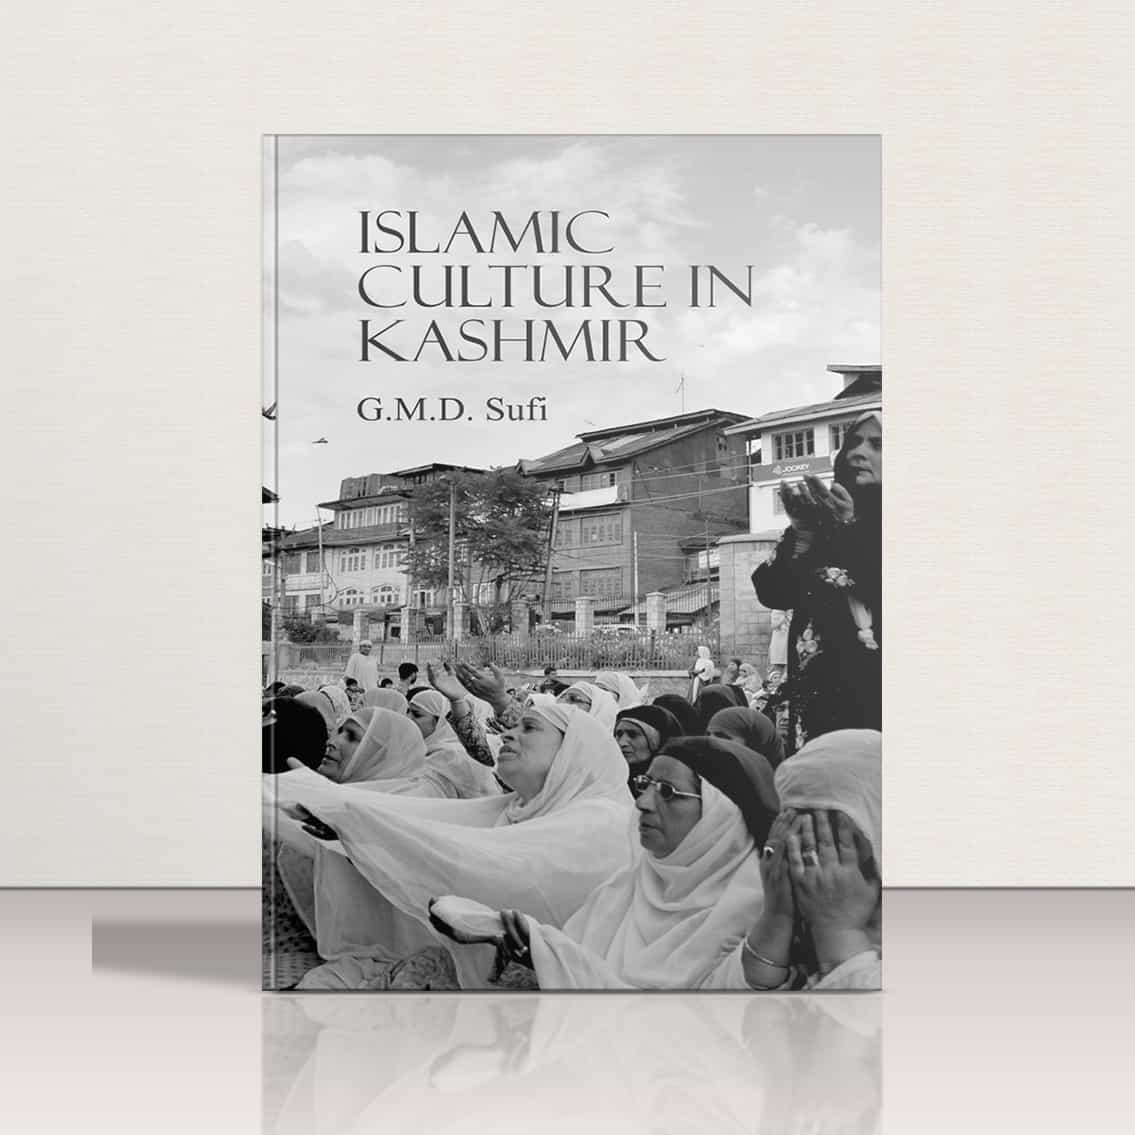 Islamic Culture in Kashmir by G.M.D. Sufi